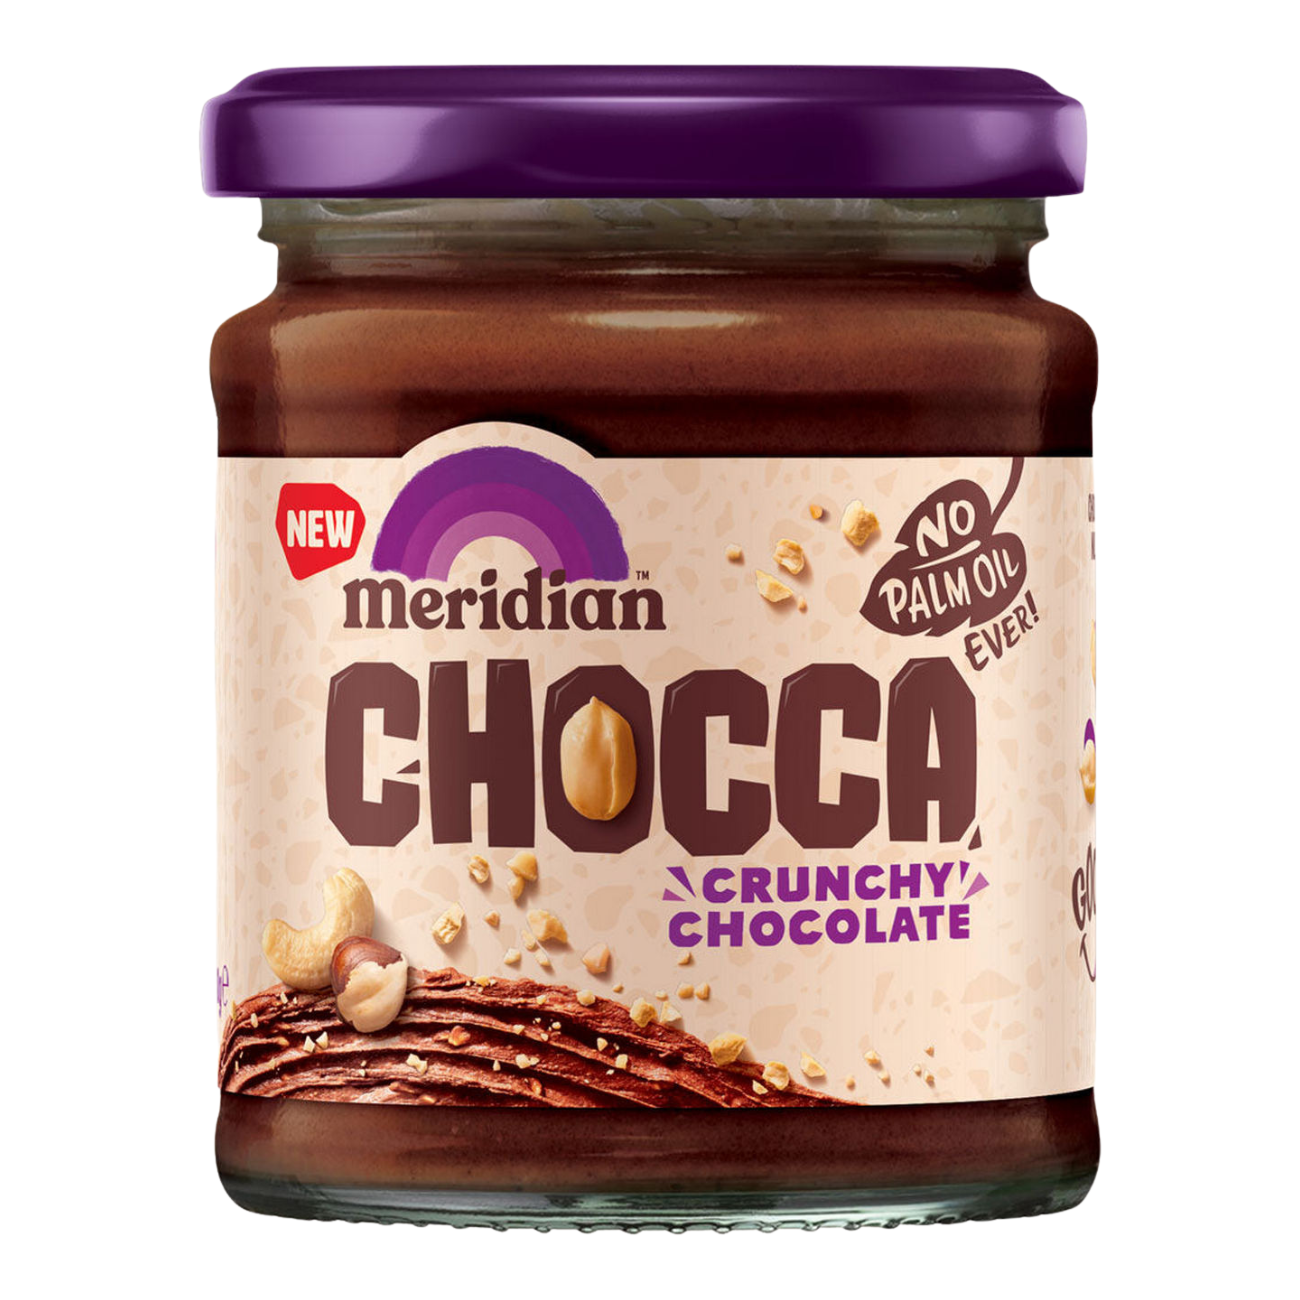 Chocca Crunchy Chocolate Spread 240g